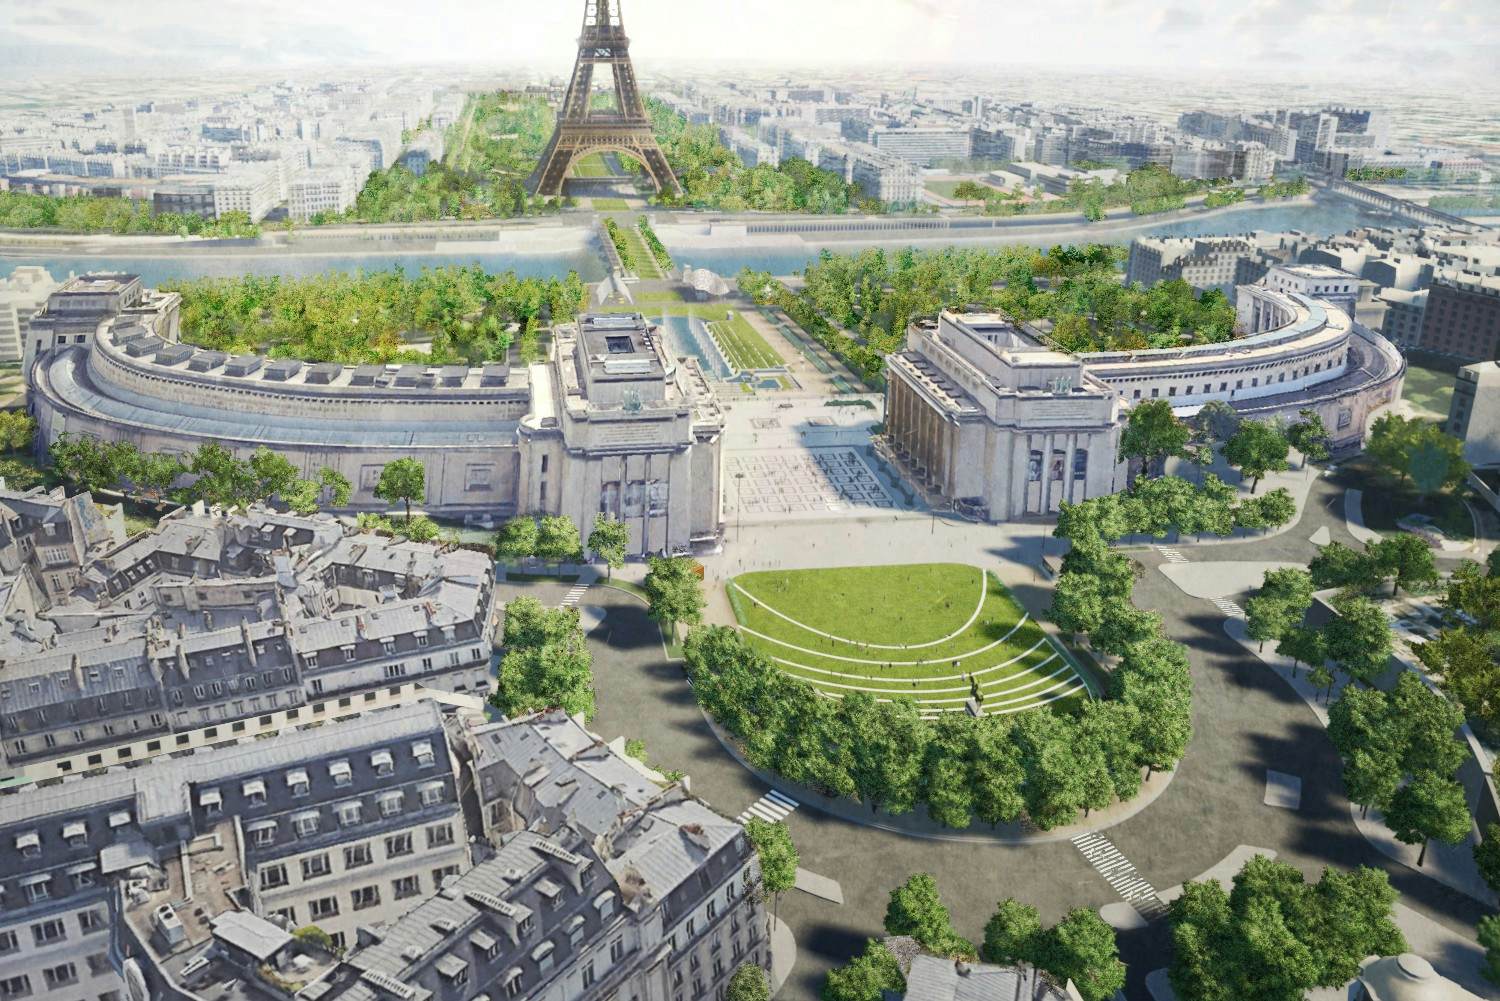 Paris is creating a pedestrianised garden around the Eiffel Tower ...